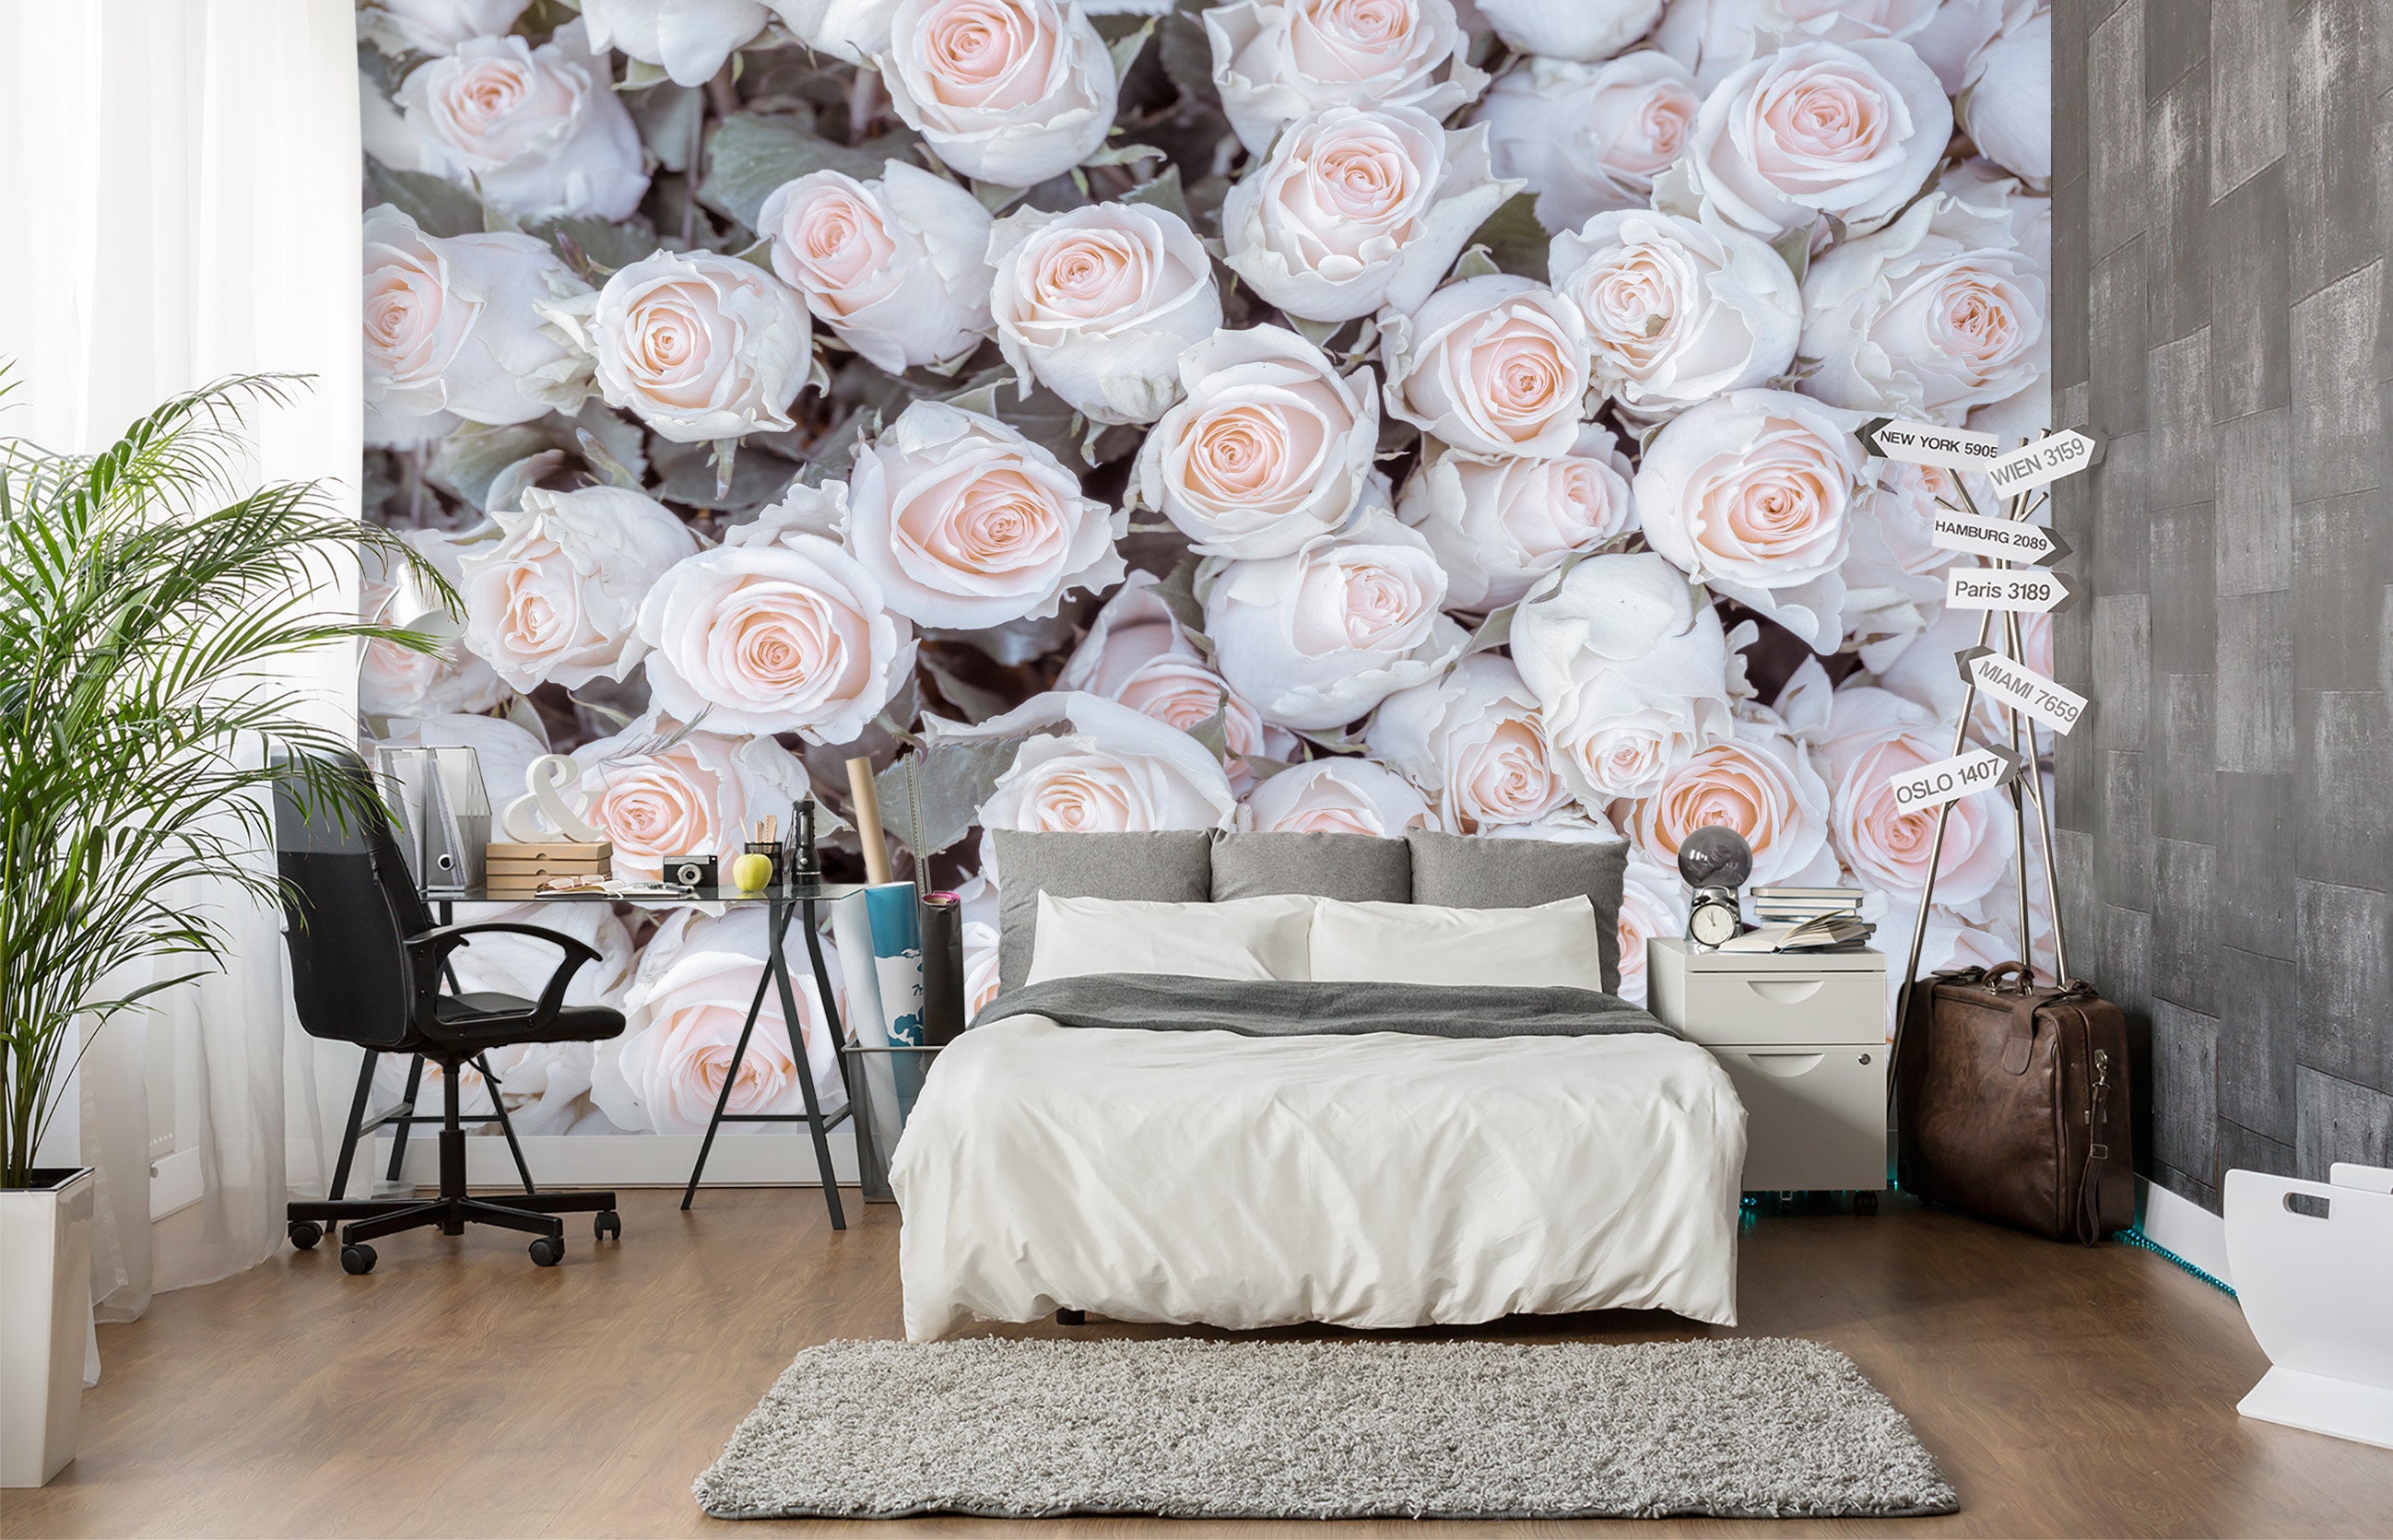 3D Rose Bouquet 6271 Assaf Frank Wall Mural Wall Murals